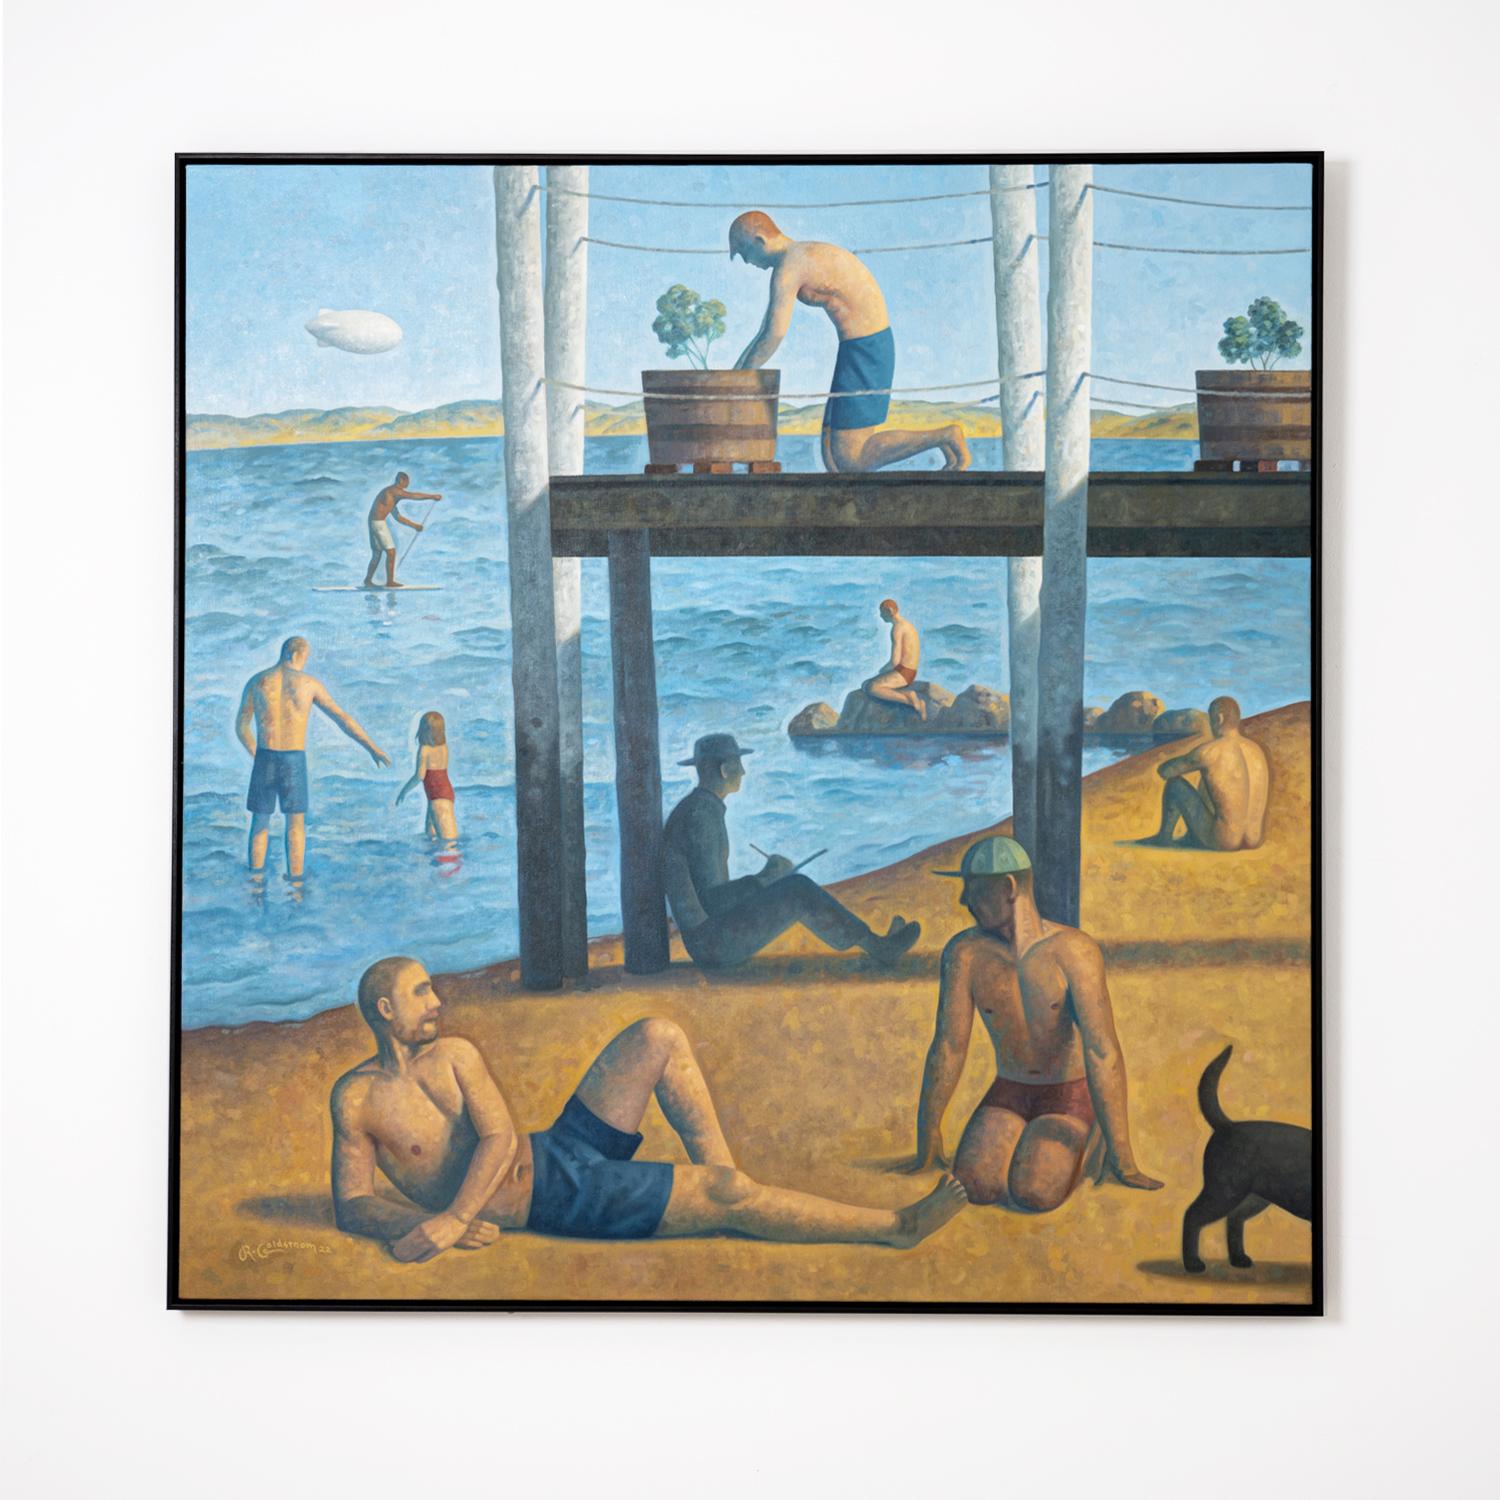 Peinture de paysage dans le style du peintre pointilliste Georges Seurat, représentant des personnages se prélassant sur une plage de Provincetown, Cape Cod 
